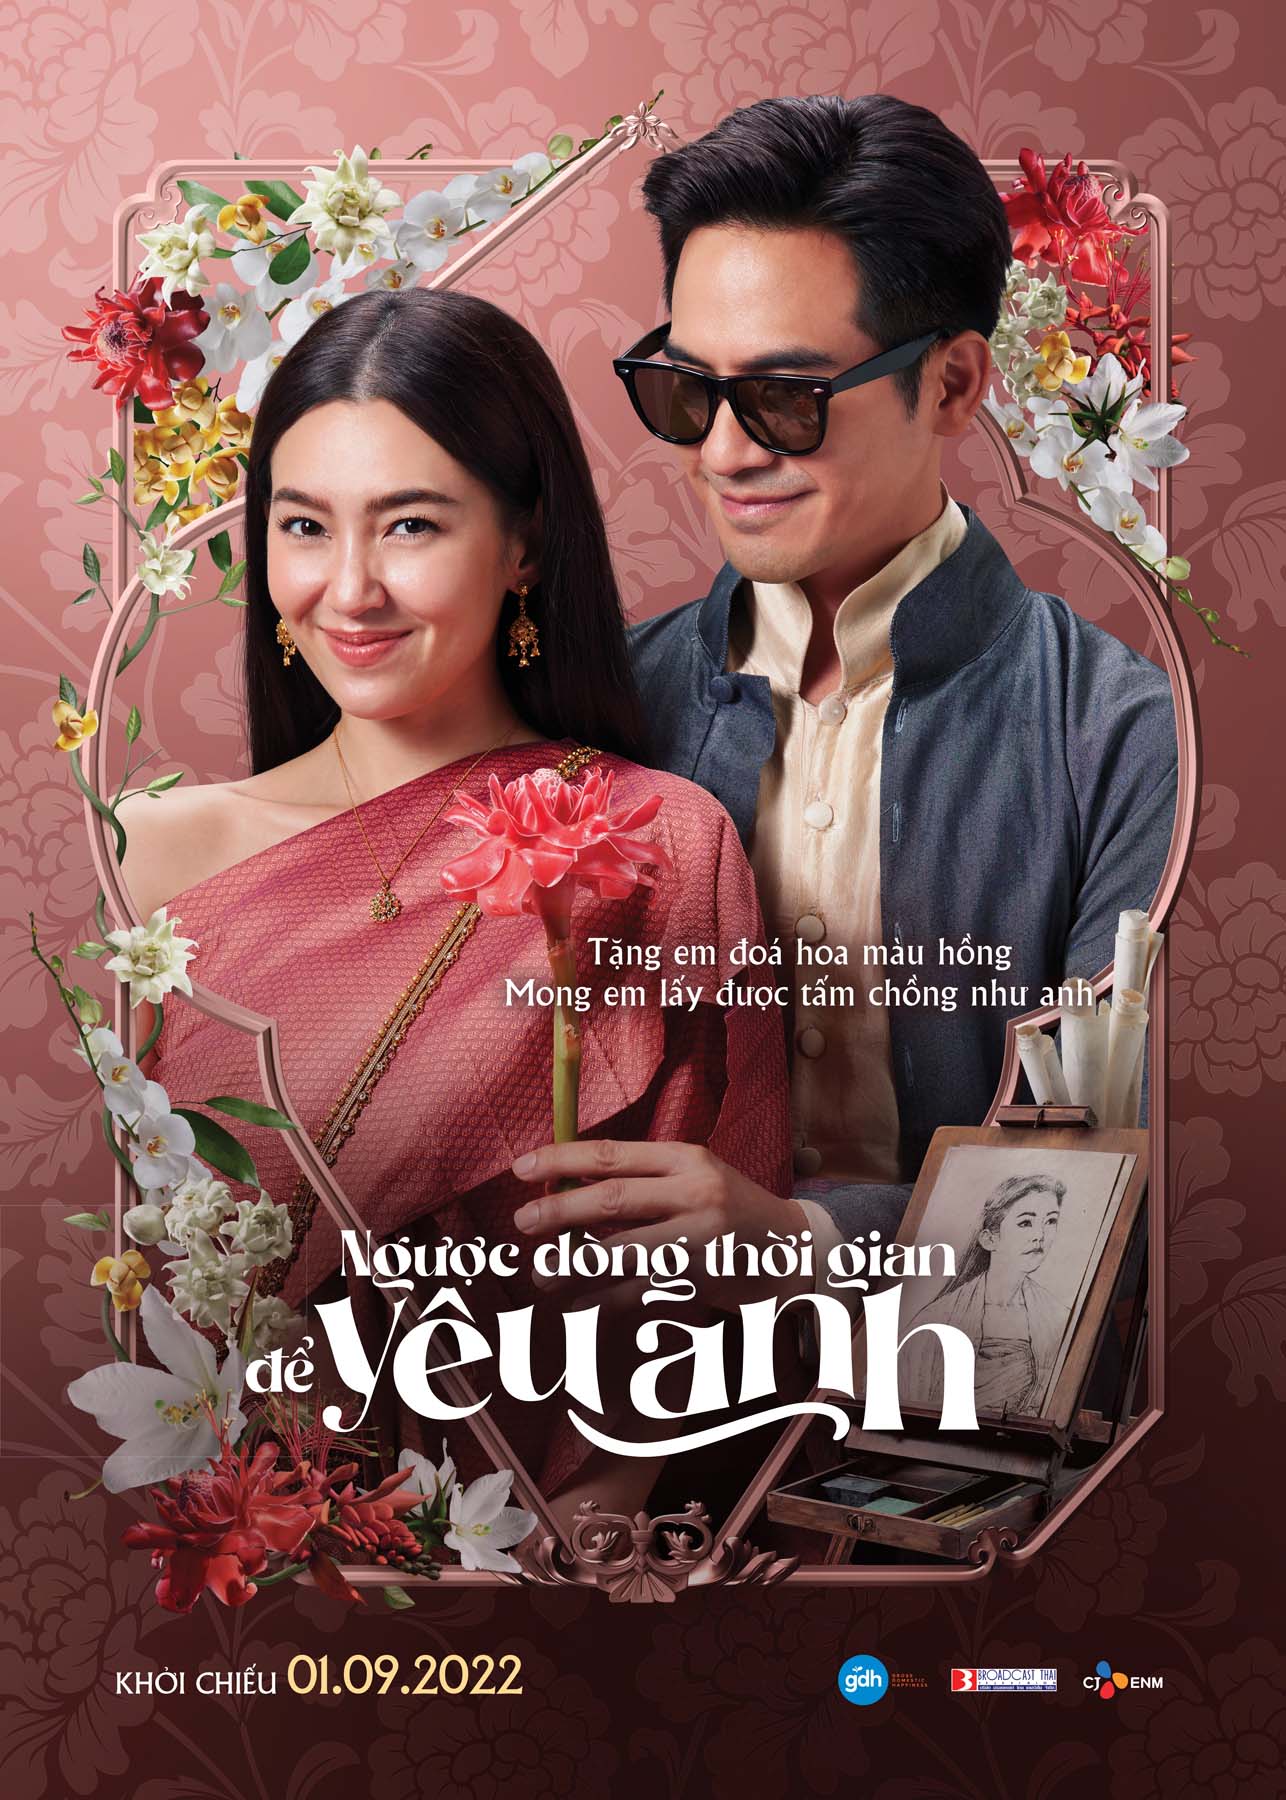 Ngược dòng thời gian để yêu anh- siêu phẩm Thái Lan bản điện ảnh ấn định ngày chiếu rạp Việt - ảnh 1